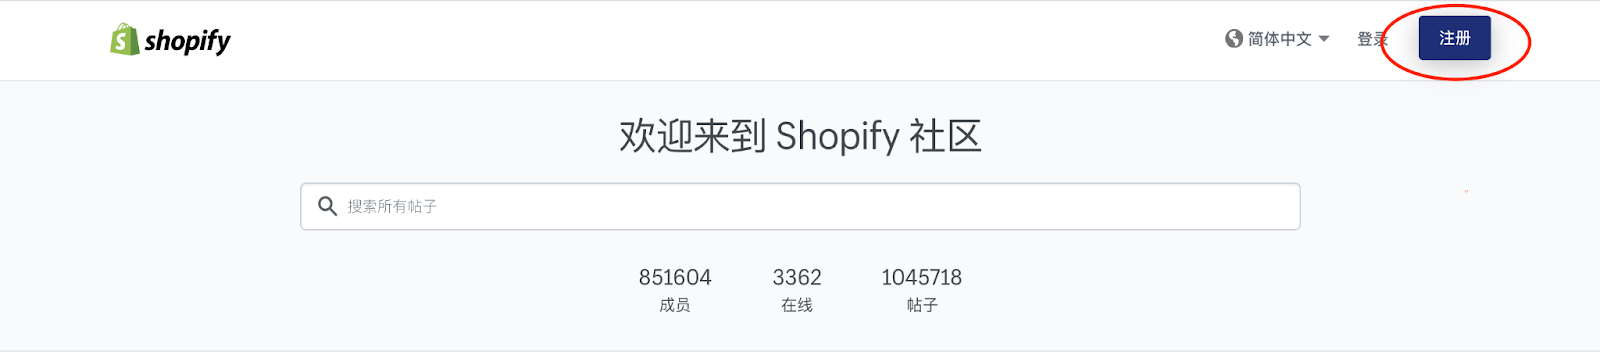 Shopify官方中文社区论坛